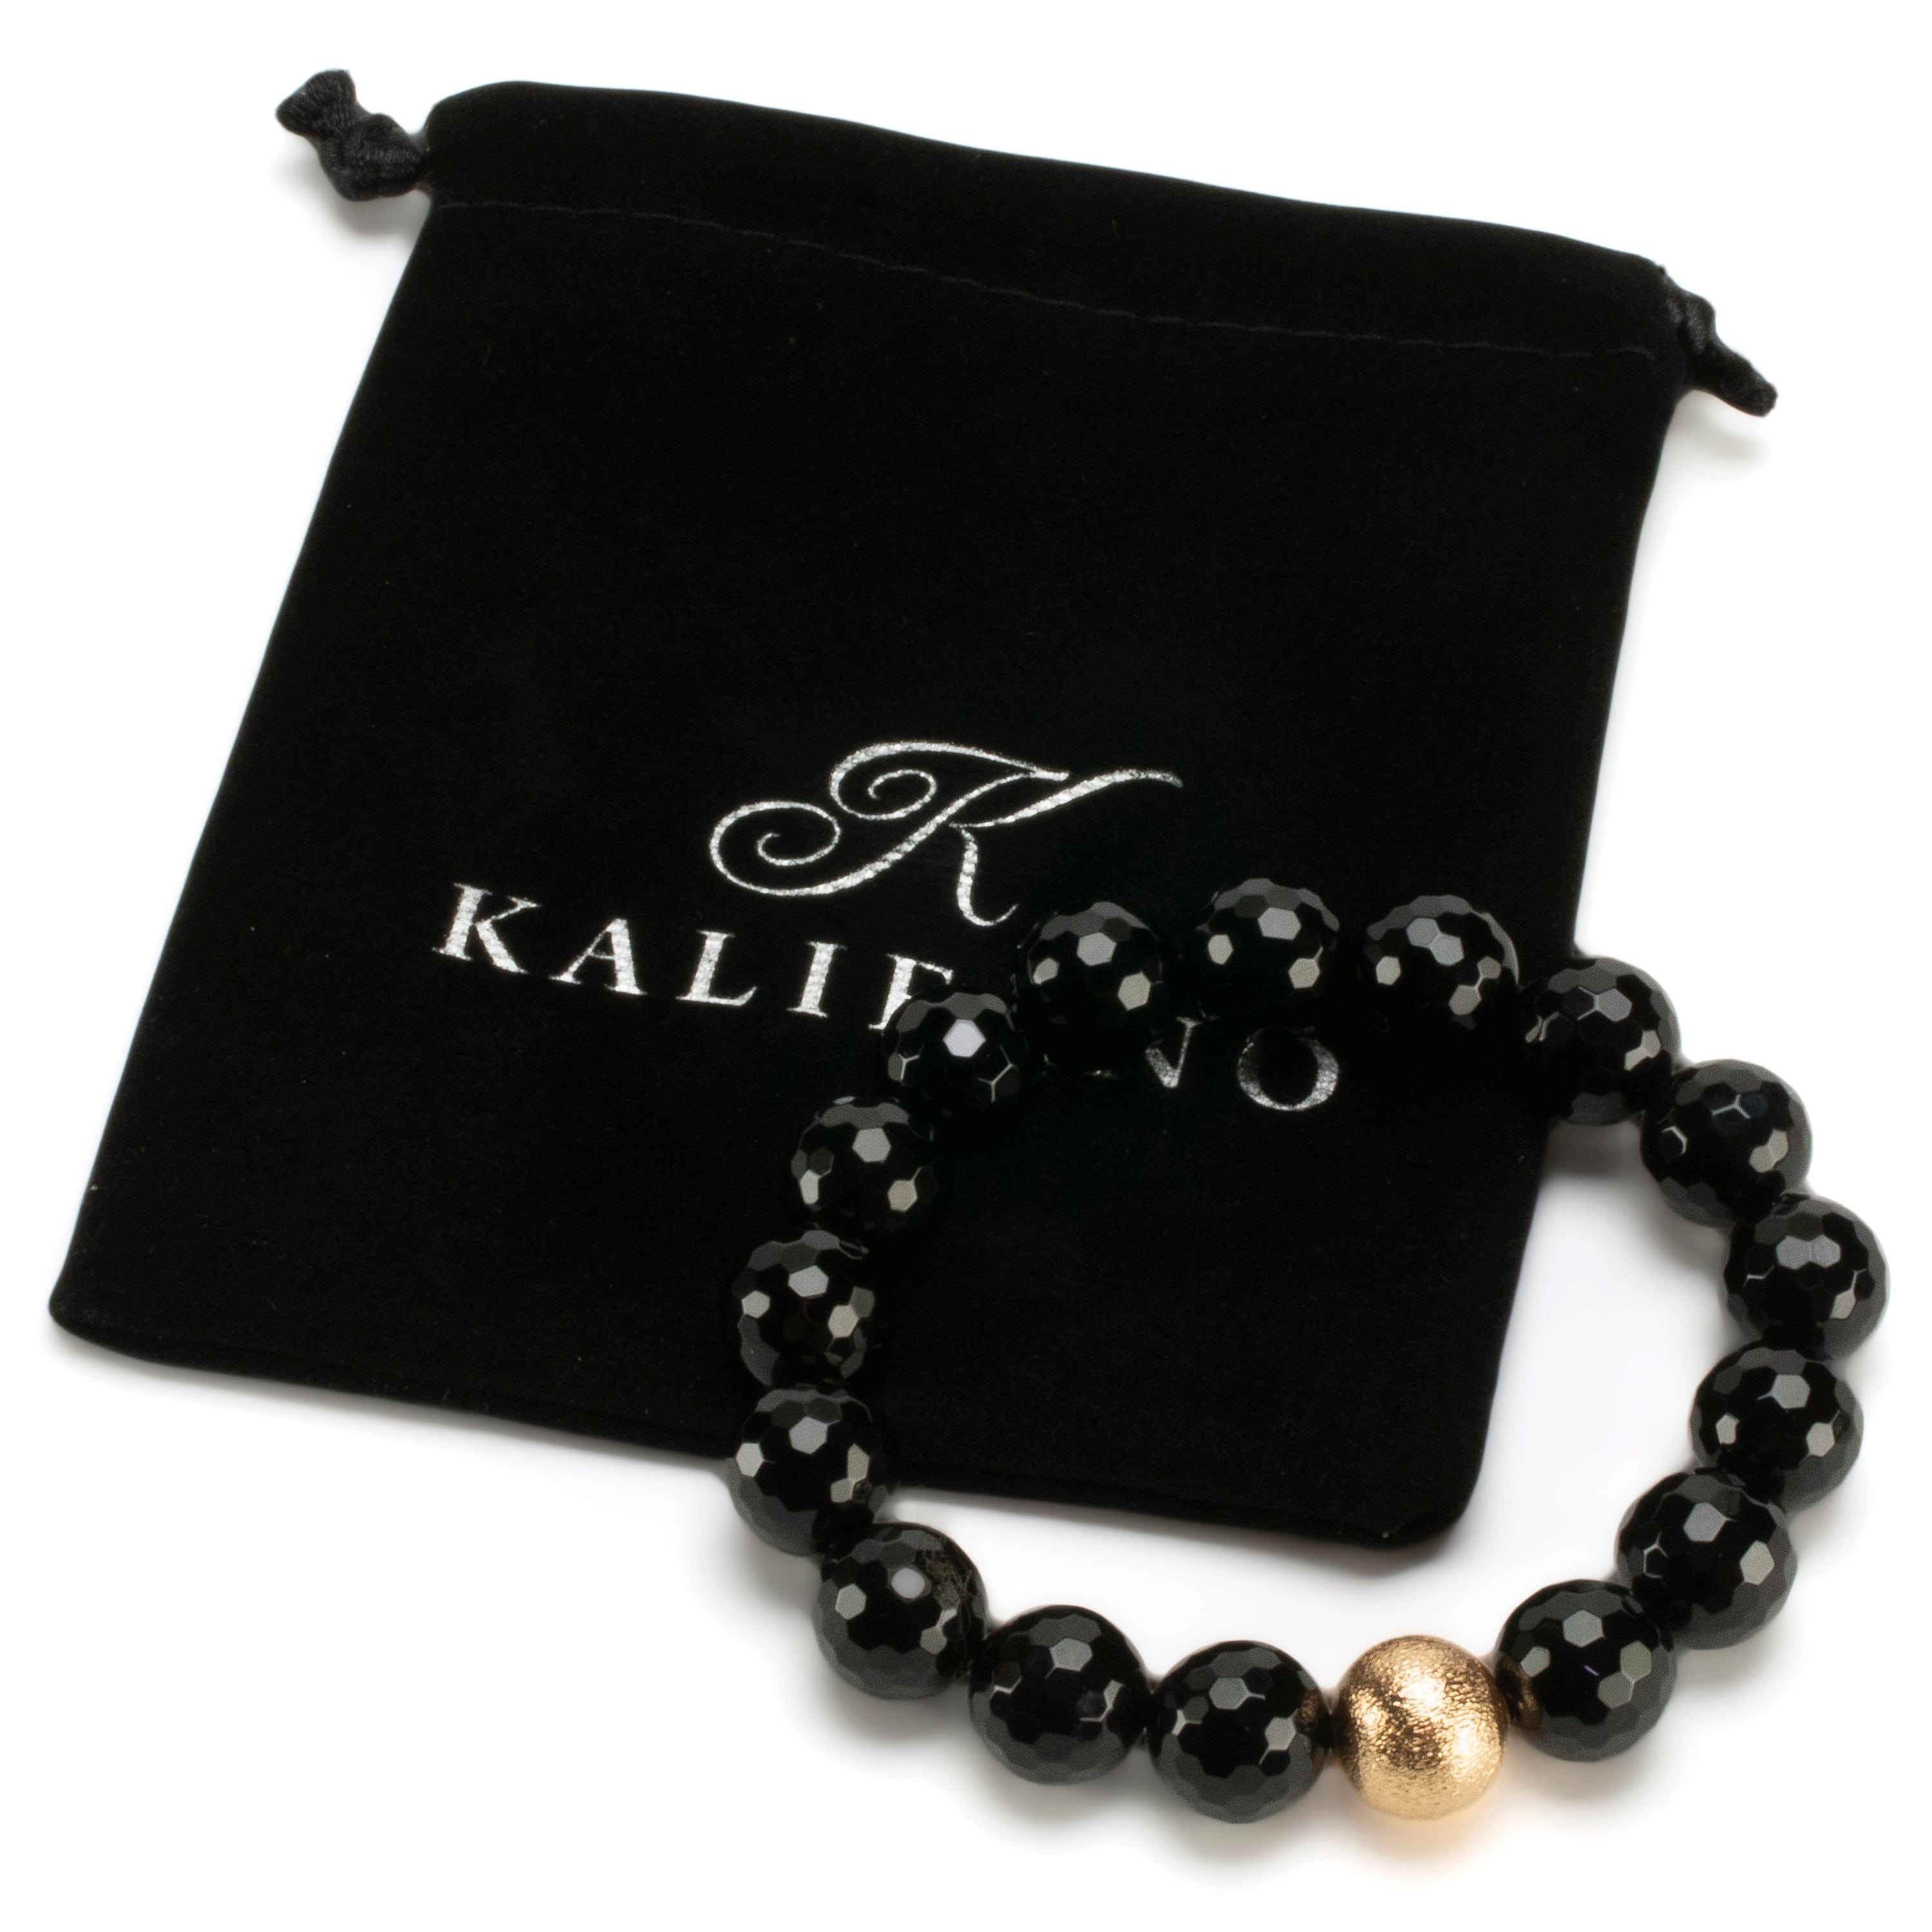 Kalifano Gemstone Bracelets Polished Banded Carnelian 12mm Gemstone Bead Elastic Bracelet with Gold Accent Bead GOLD-BGP-069